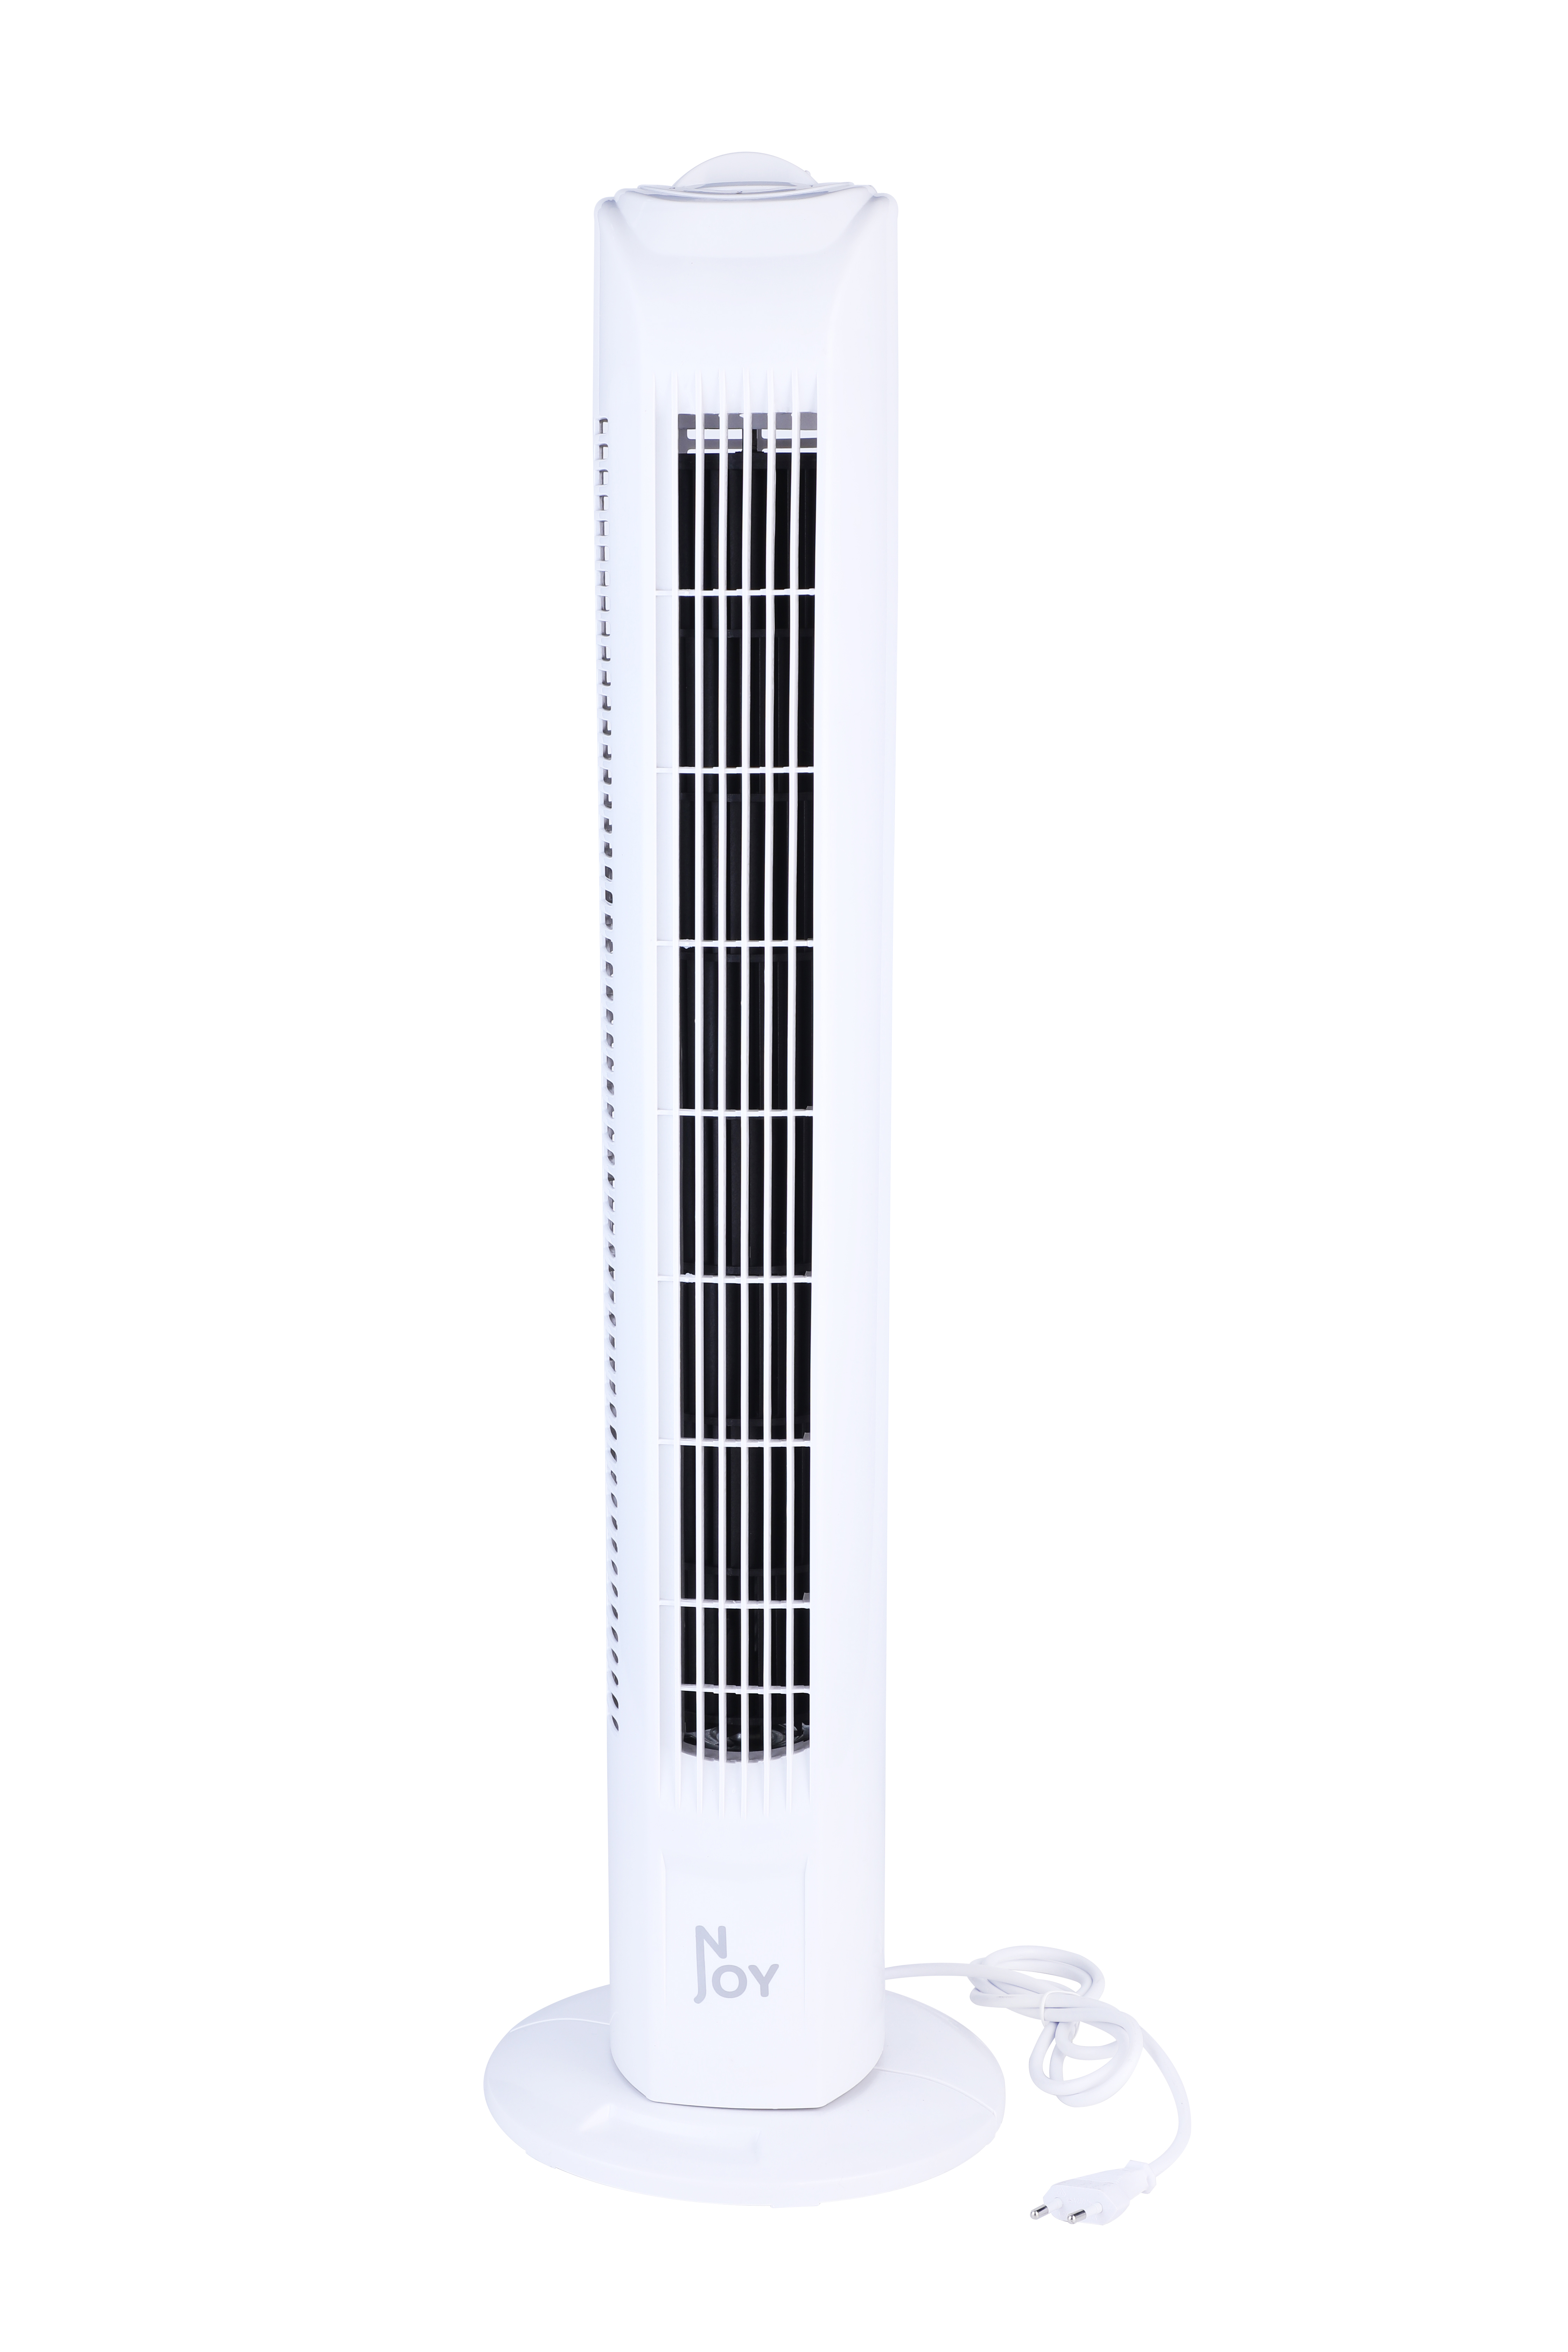 NJOY Ventilator - Turm - - Sicher Turm Turmventilator Superkuehlung Geschwindigkeiten 50W - Weiss - 3 - - Weiß